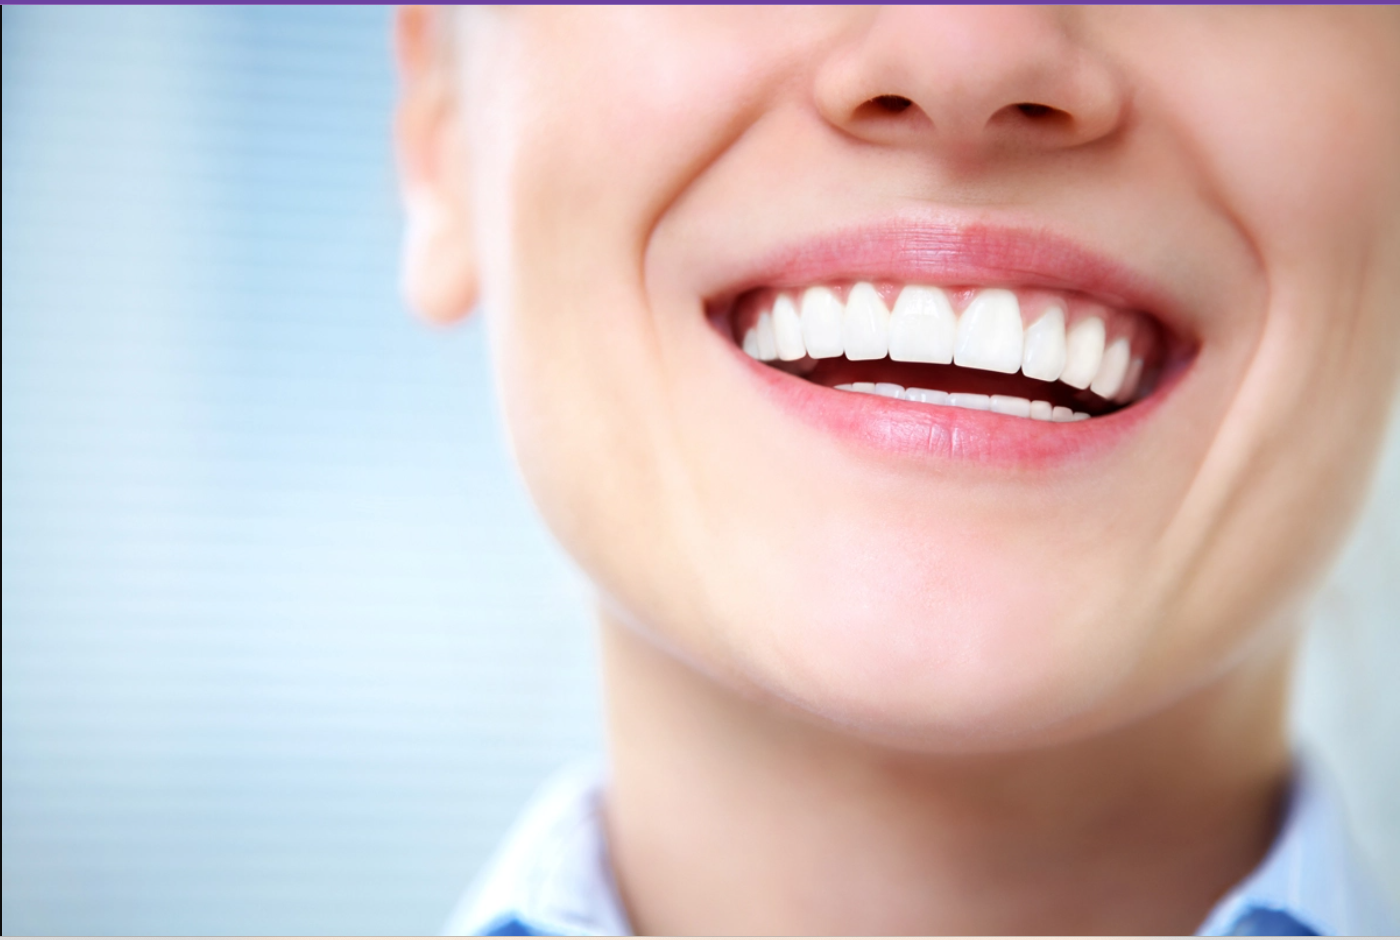  الاسنان في المنام - تفسير الاحلام اون لاين